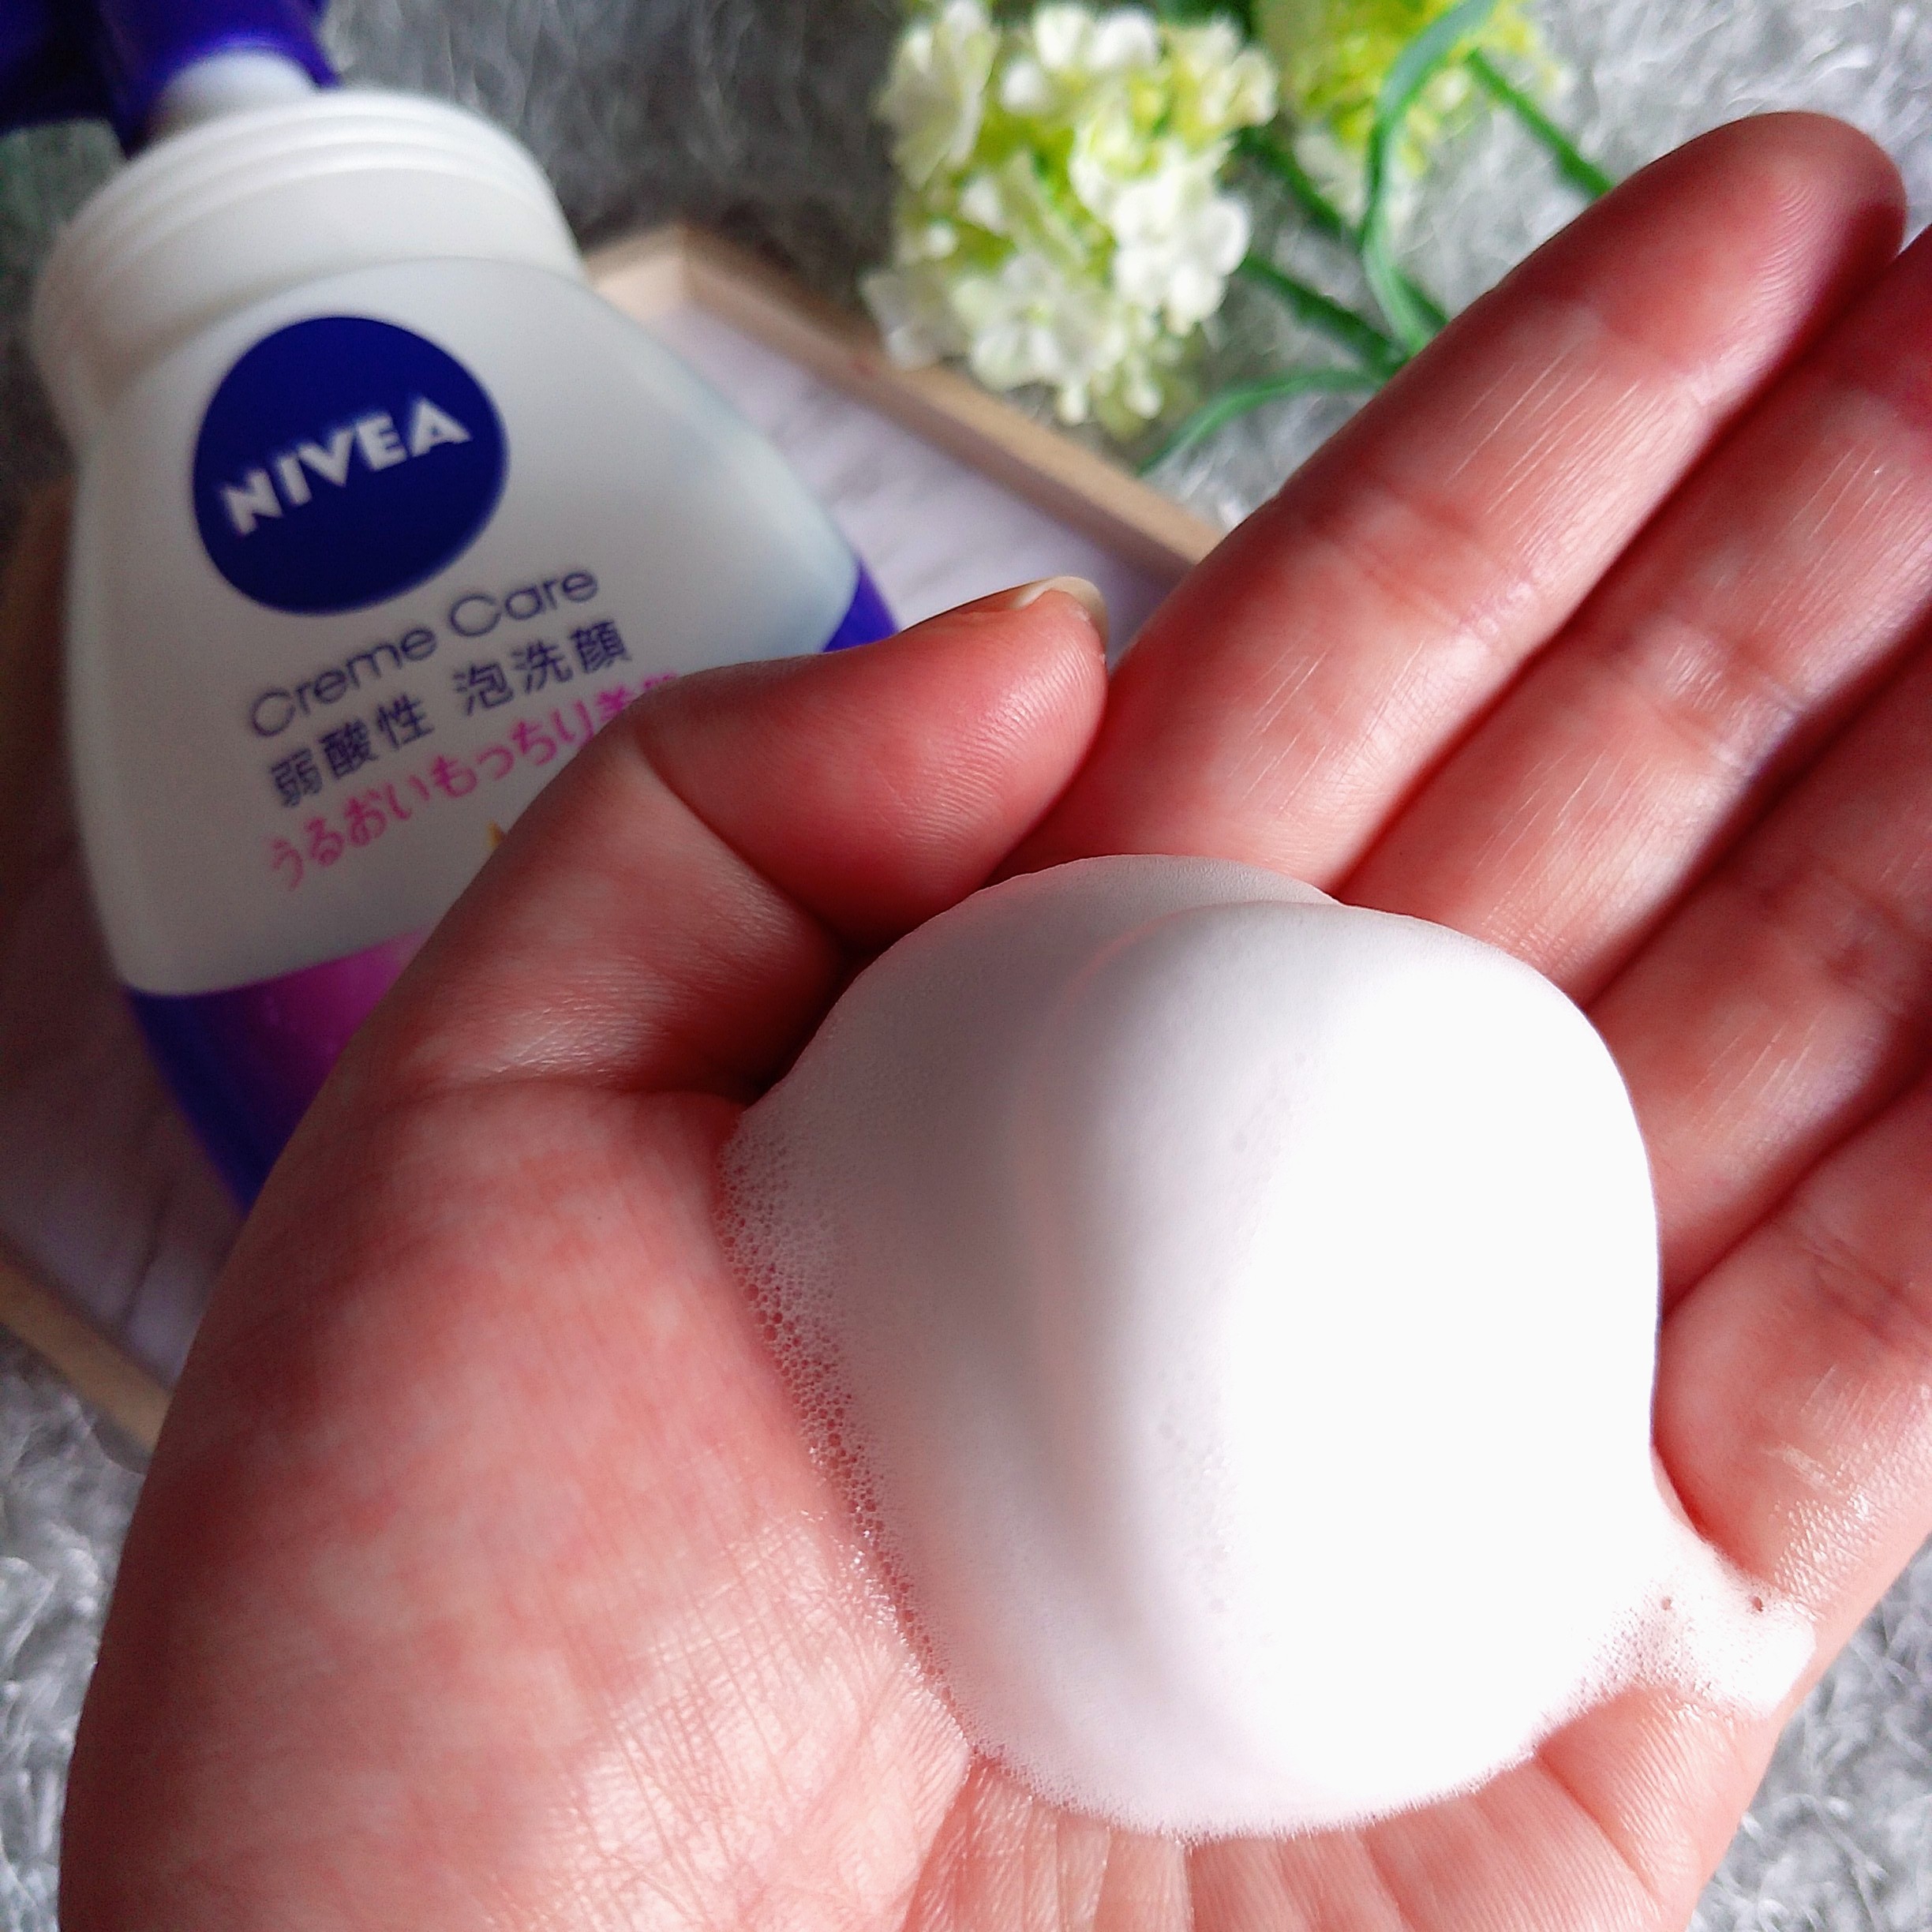 NIVEA/クリームケア弱酸性泡洗顔を使ったまるもふさんのクチコミ画像3